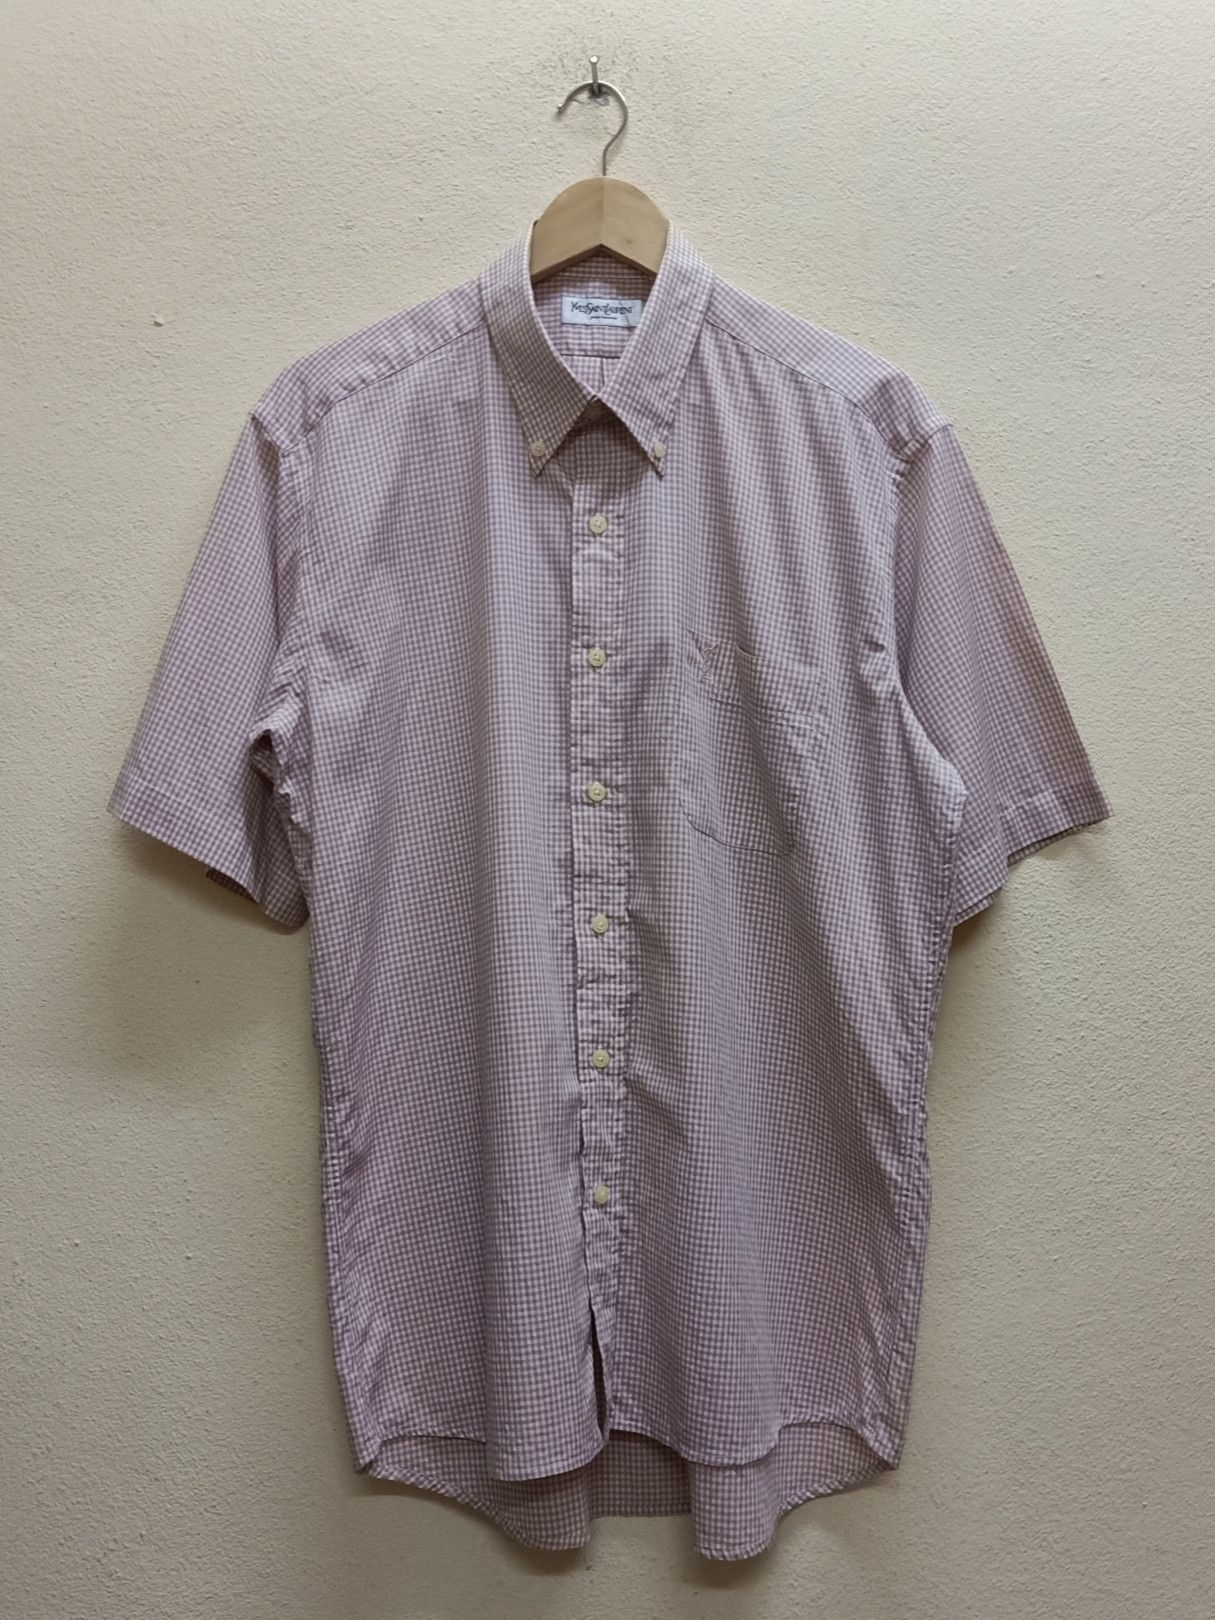 Vintage YVES SAINT LAURENT Pour Homme Peach Checkered Shirts. Size US S / EU 44-46 / 1 - 1 Preview